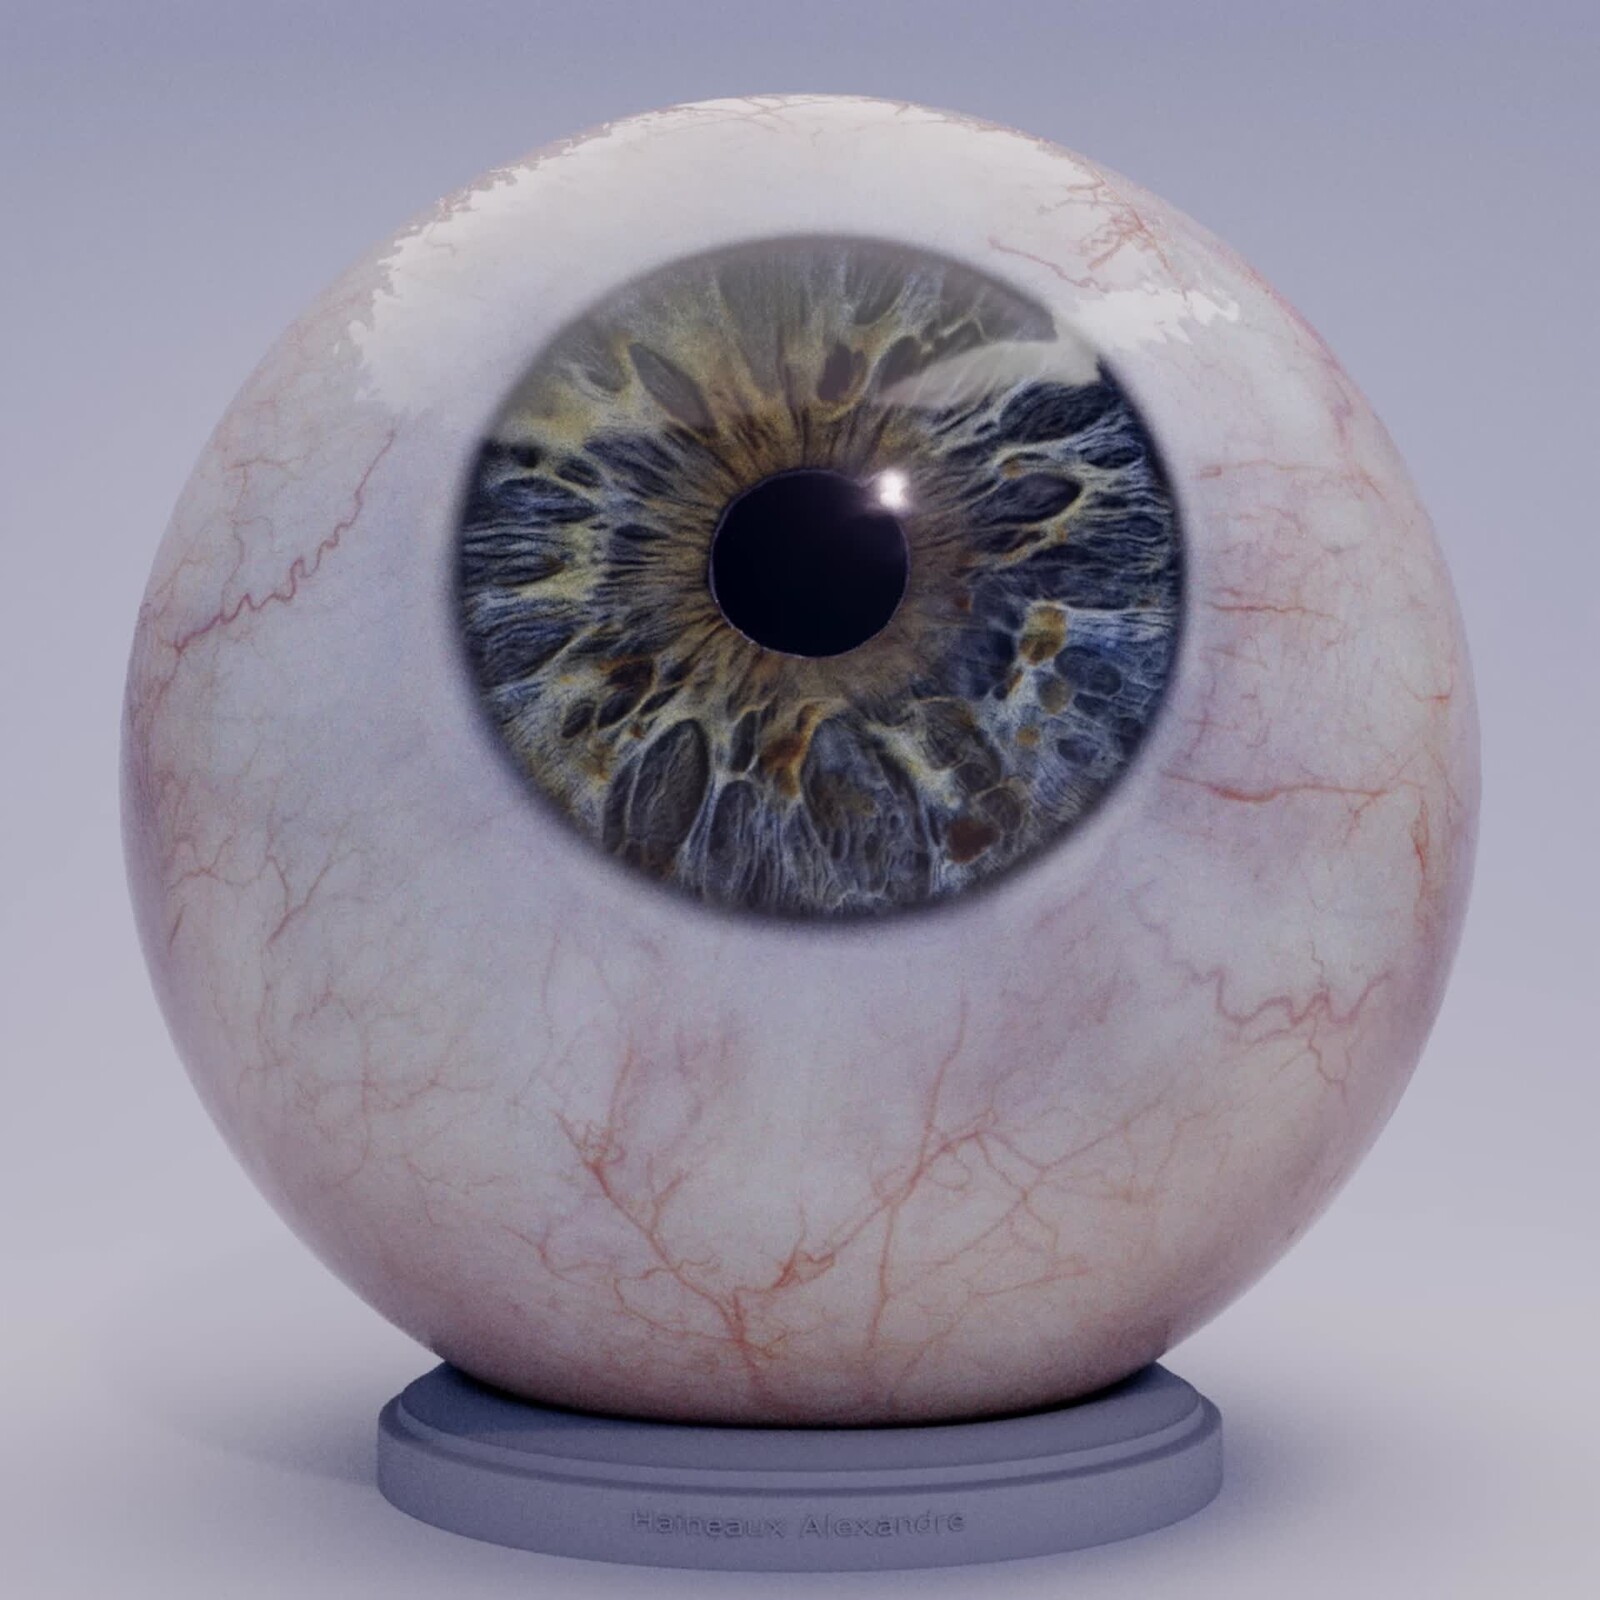 Realistic Eye Training